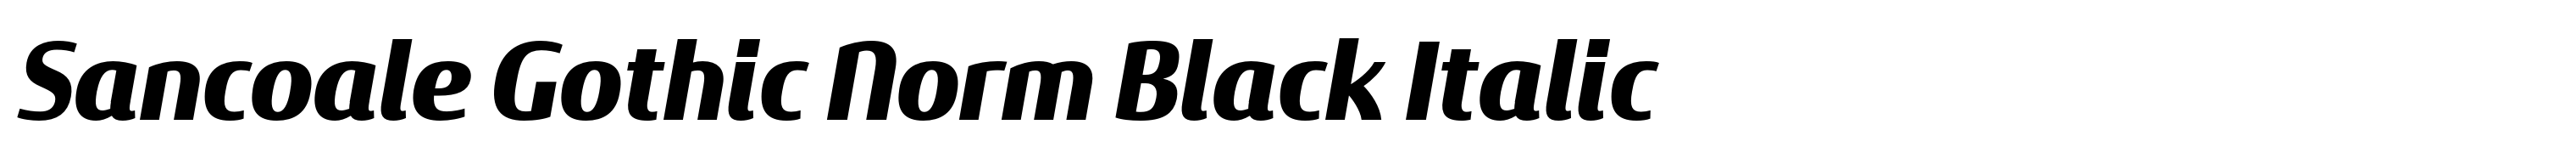 Sancoale Gothic Norm Black Italic